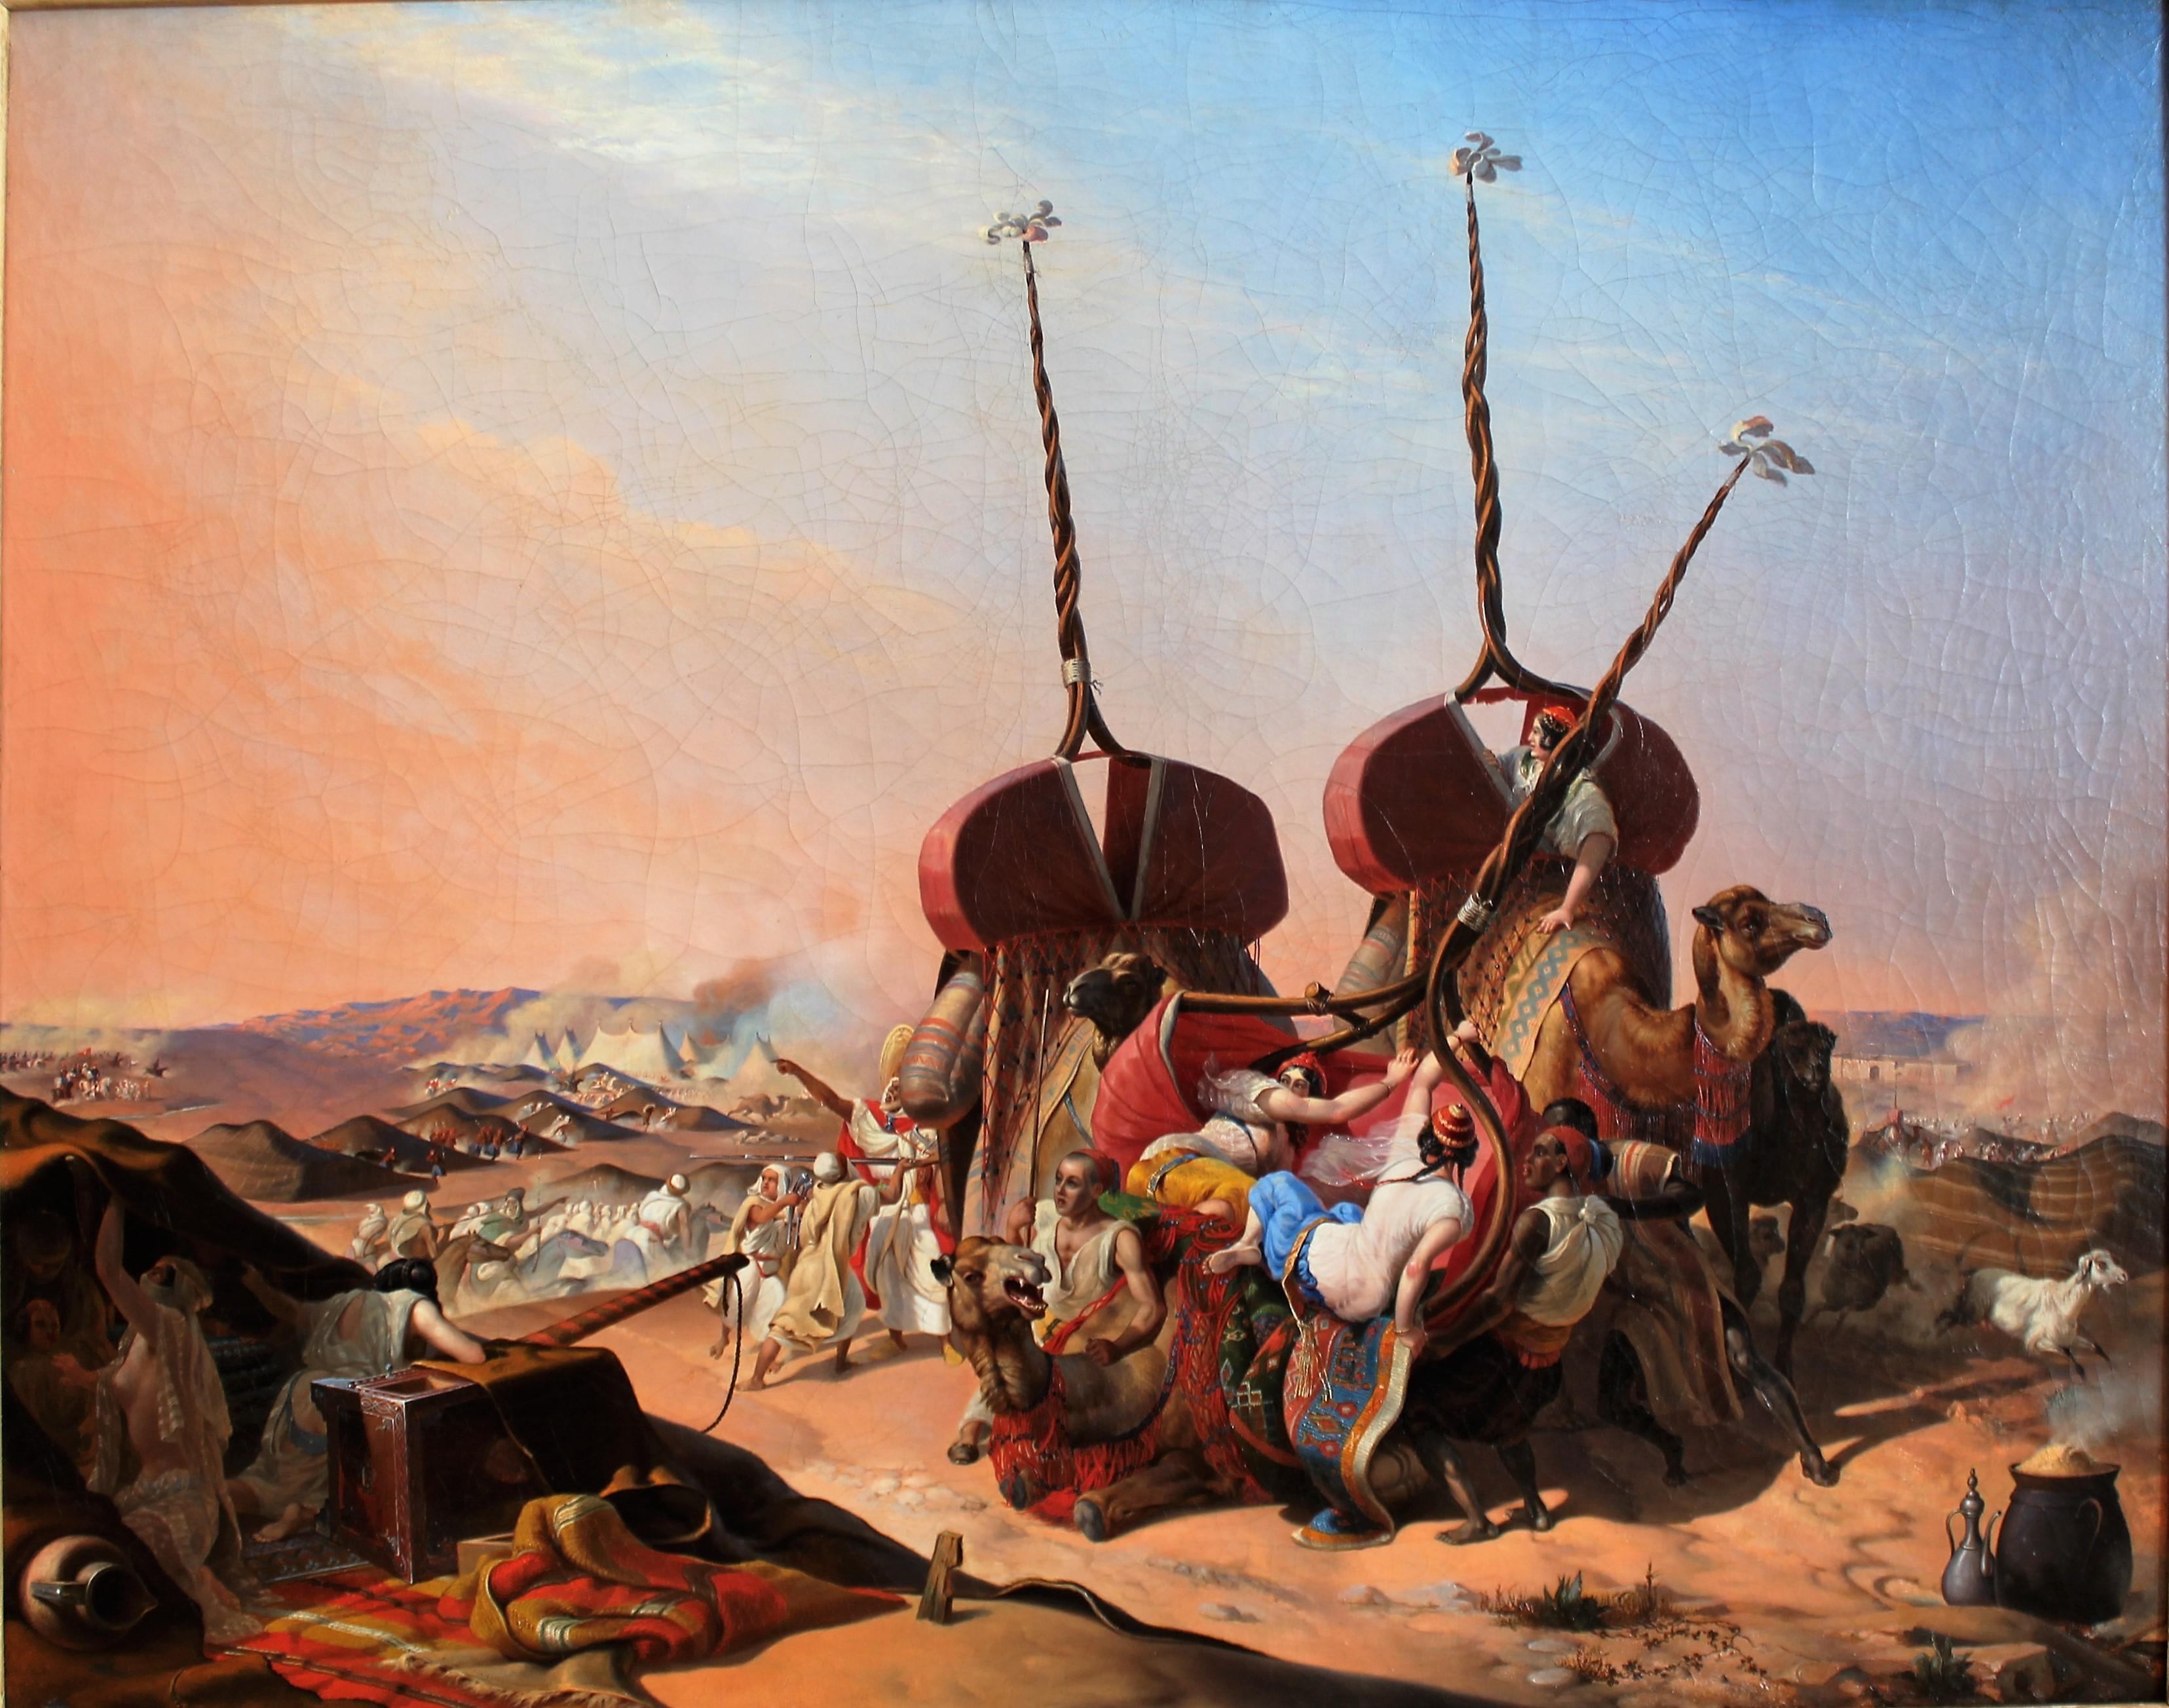 Peinture à l'huile française du 19e siècle en Algérie - Capture du Smalah de Abd el Kader - Painting de Émile Jean-Horace Vernet 